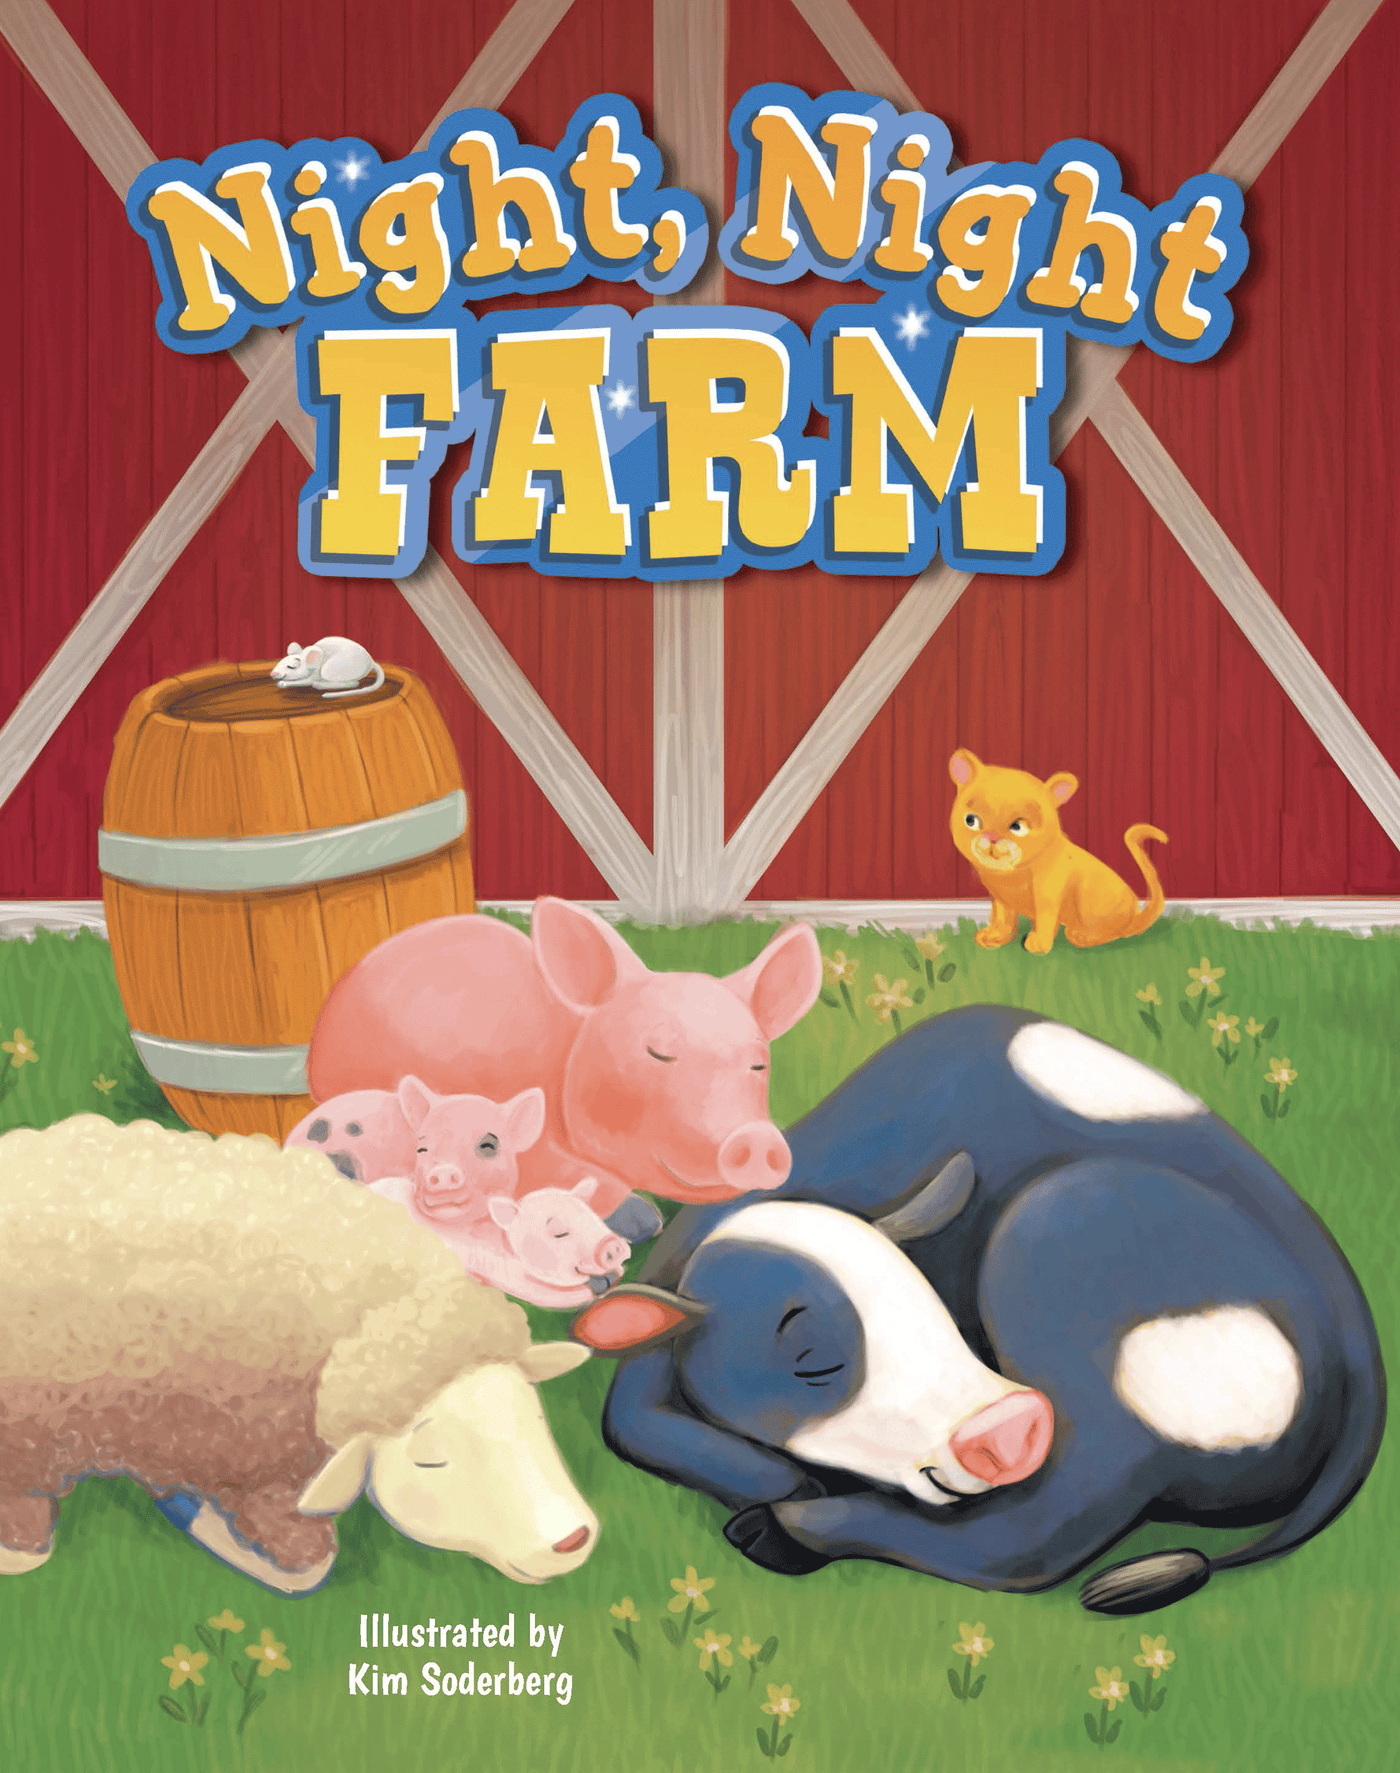 Night, Night Farm Love Little Hippo Books Children's Padded Board Book Bedtime Story family